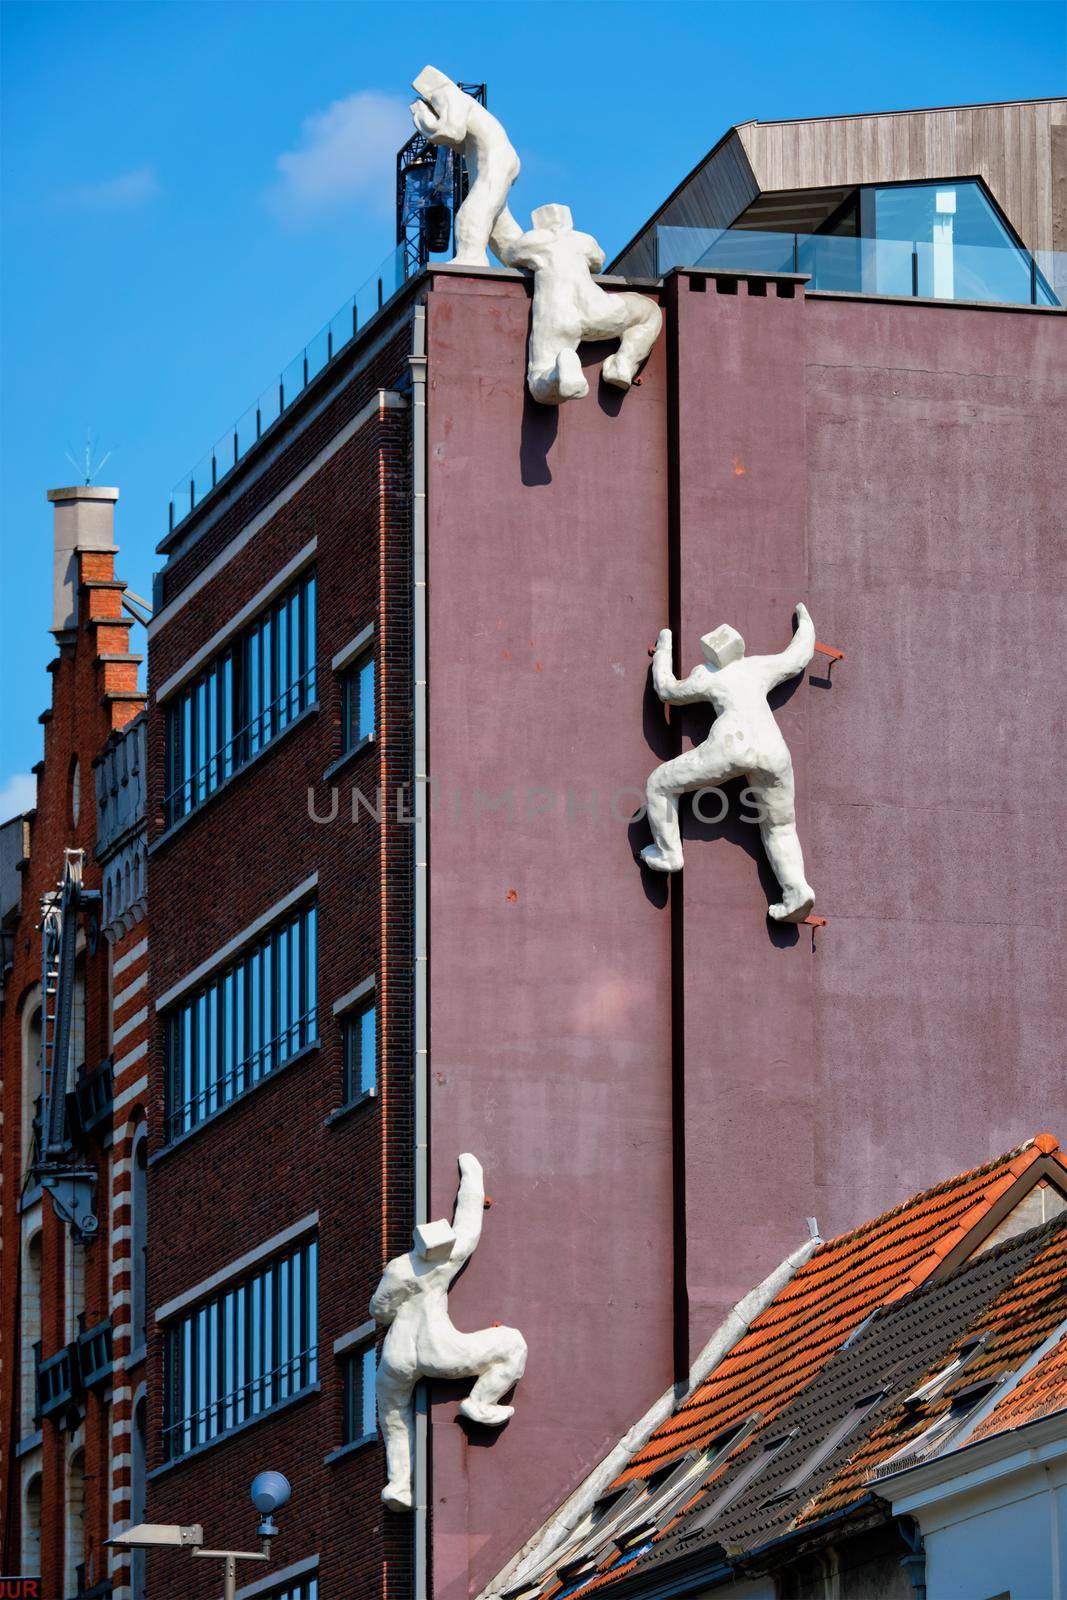 ANTWERP, BELGIUM - MAY 26, 2018: De fluisteraar (The whisperer) statue in Antwerp, Belgium